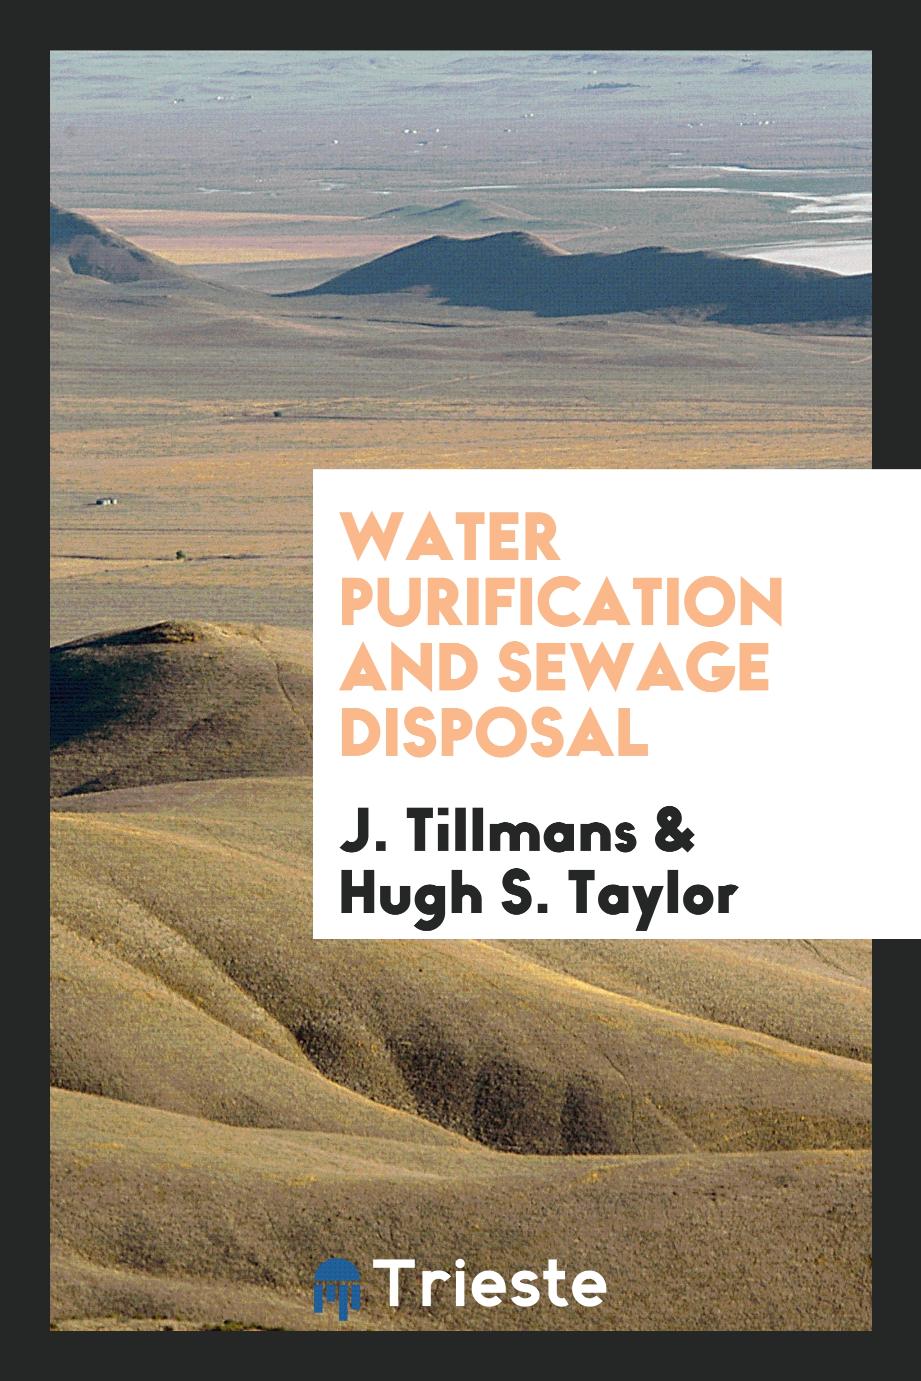 Water Purification and Sewage Disposal